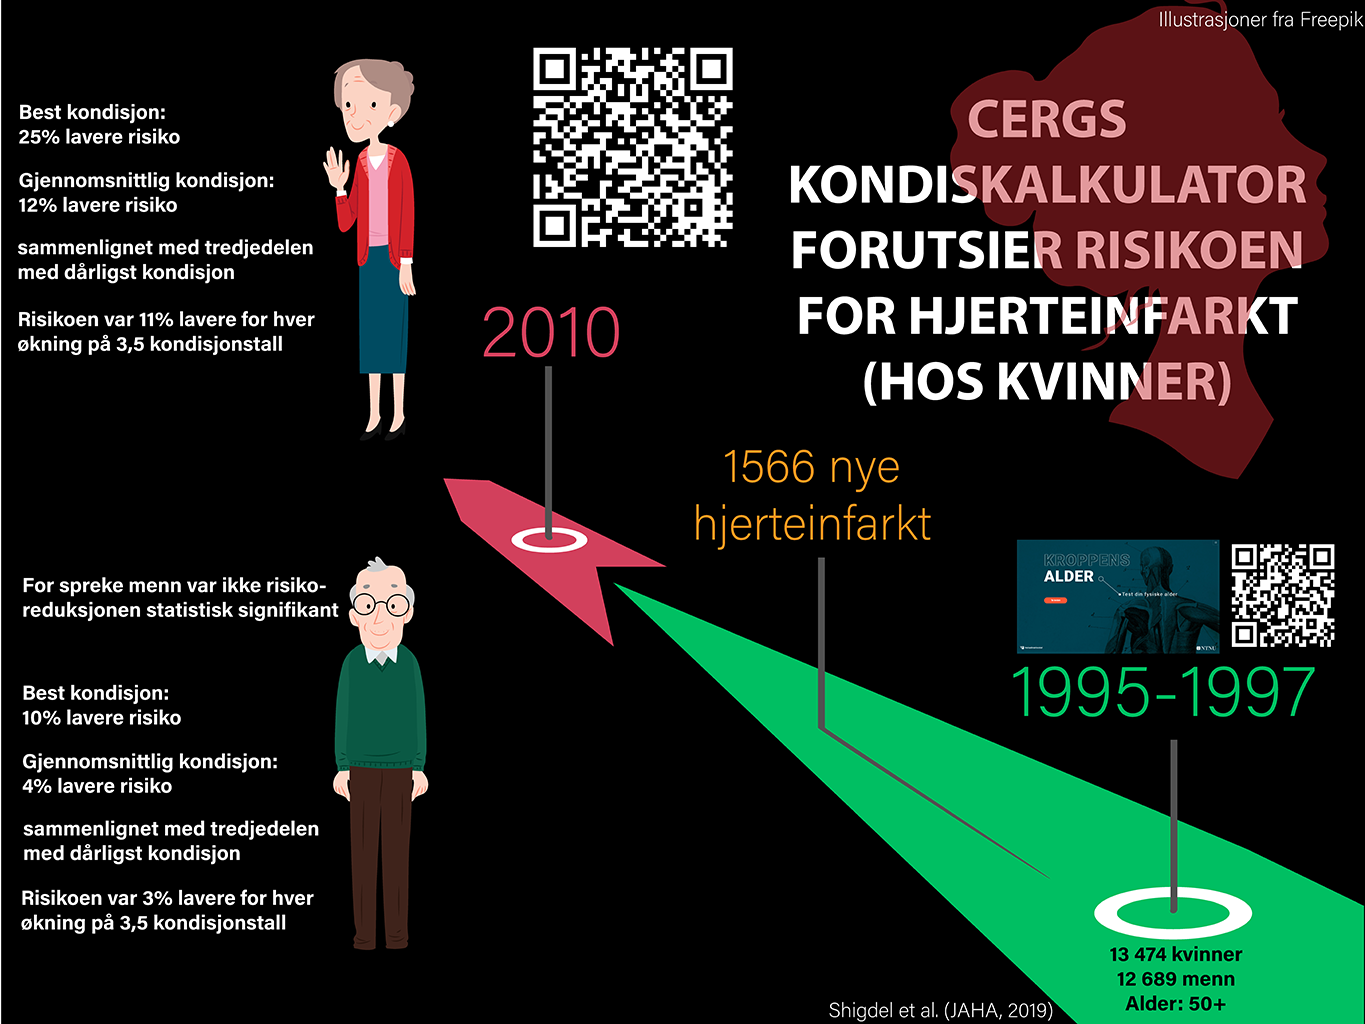 Infografikk: CERGs kondiskalkulatoren forutsier hjerteinfarkt